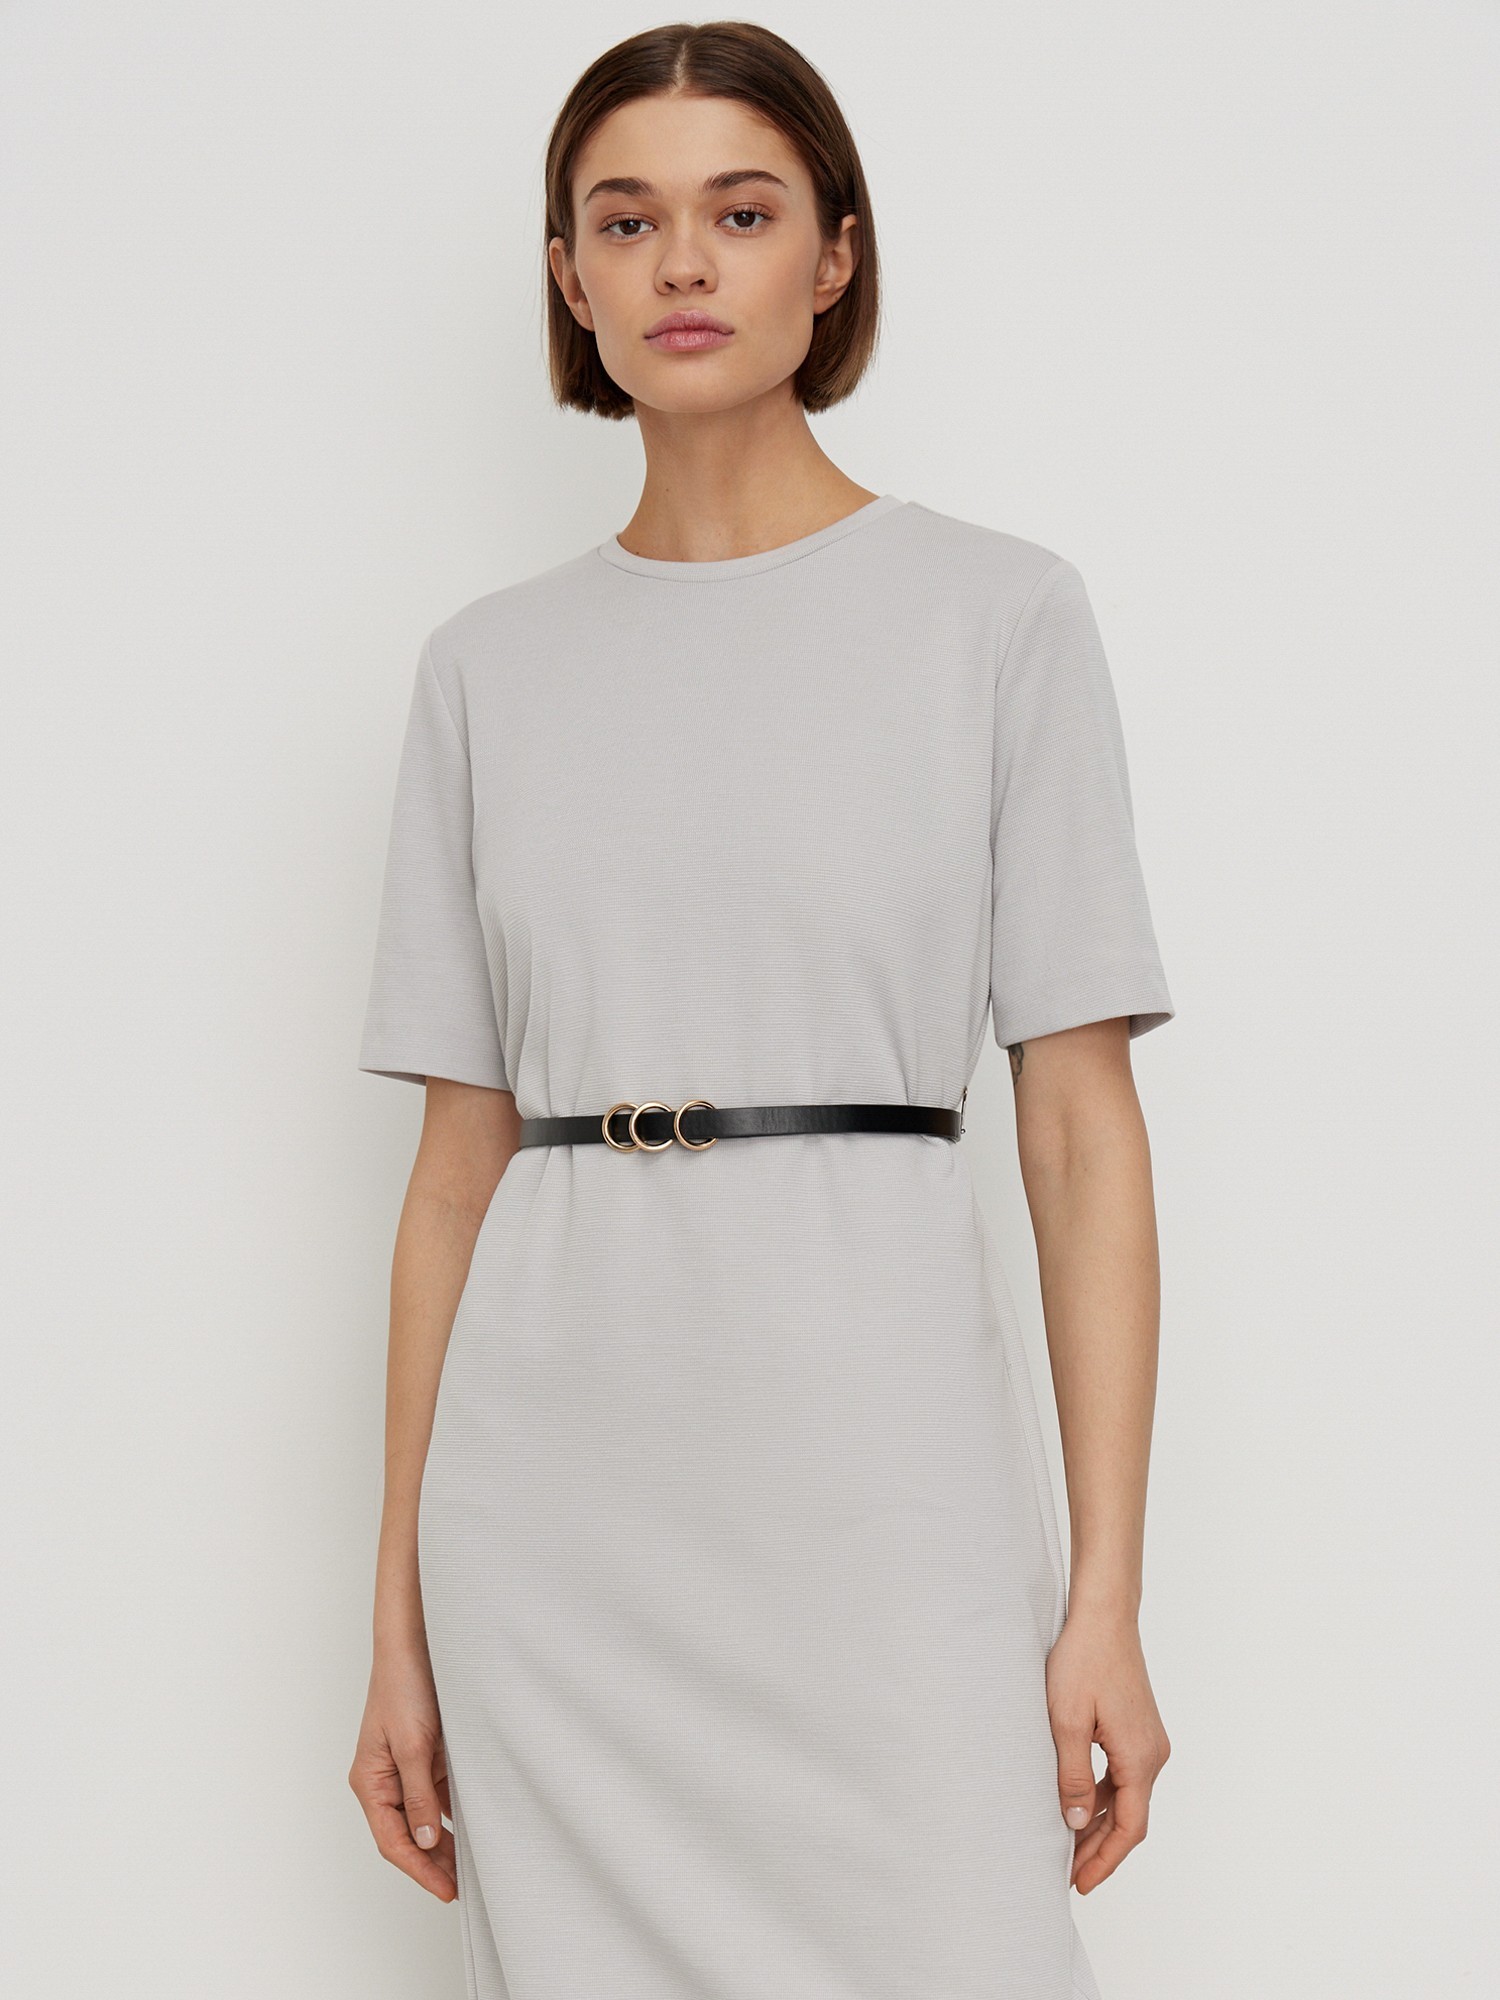 Платье с коротким рукавом трикотажное Elis DR0496K, цвет серый, размер 46 - фото 2